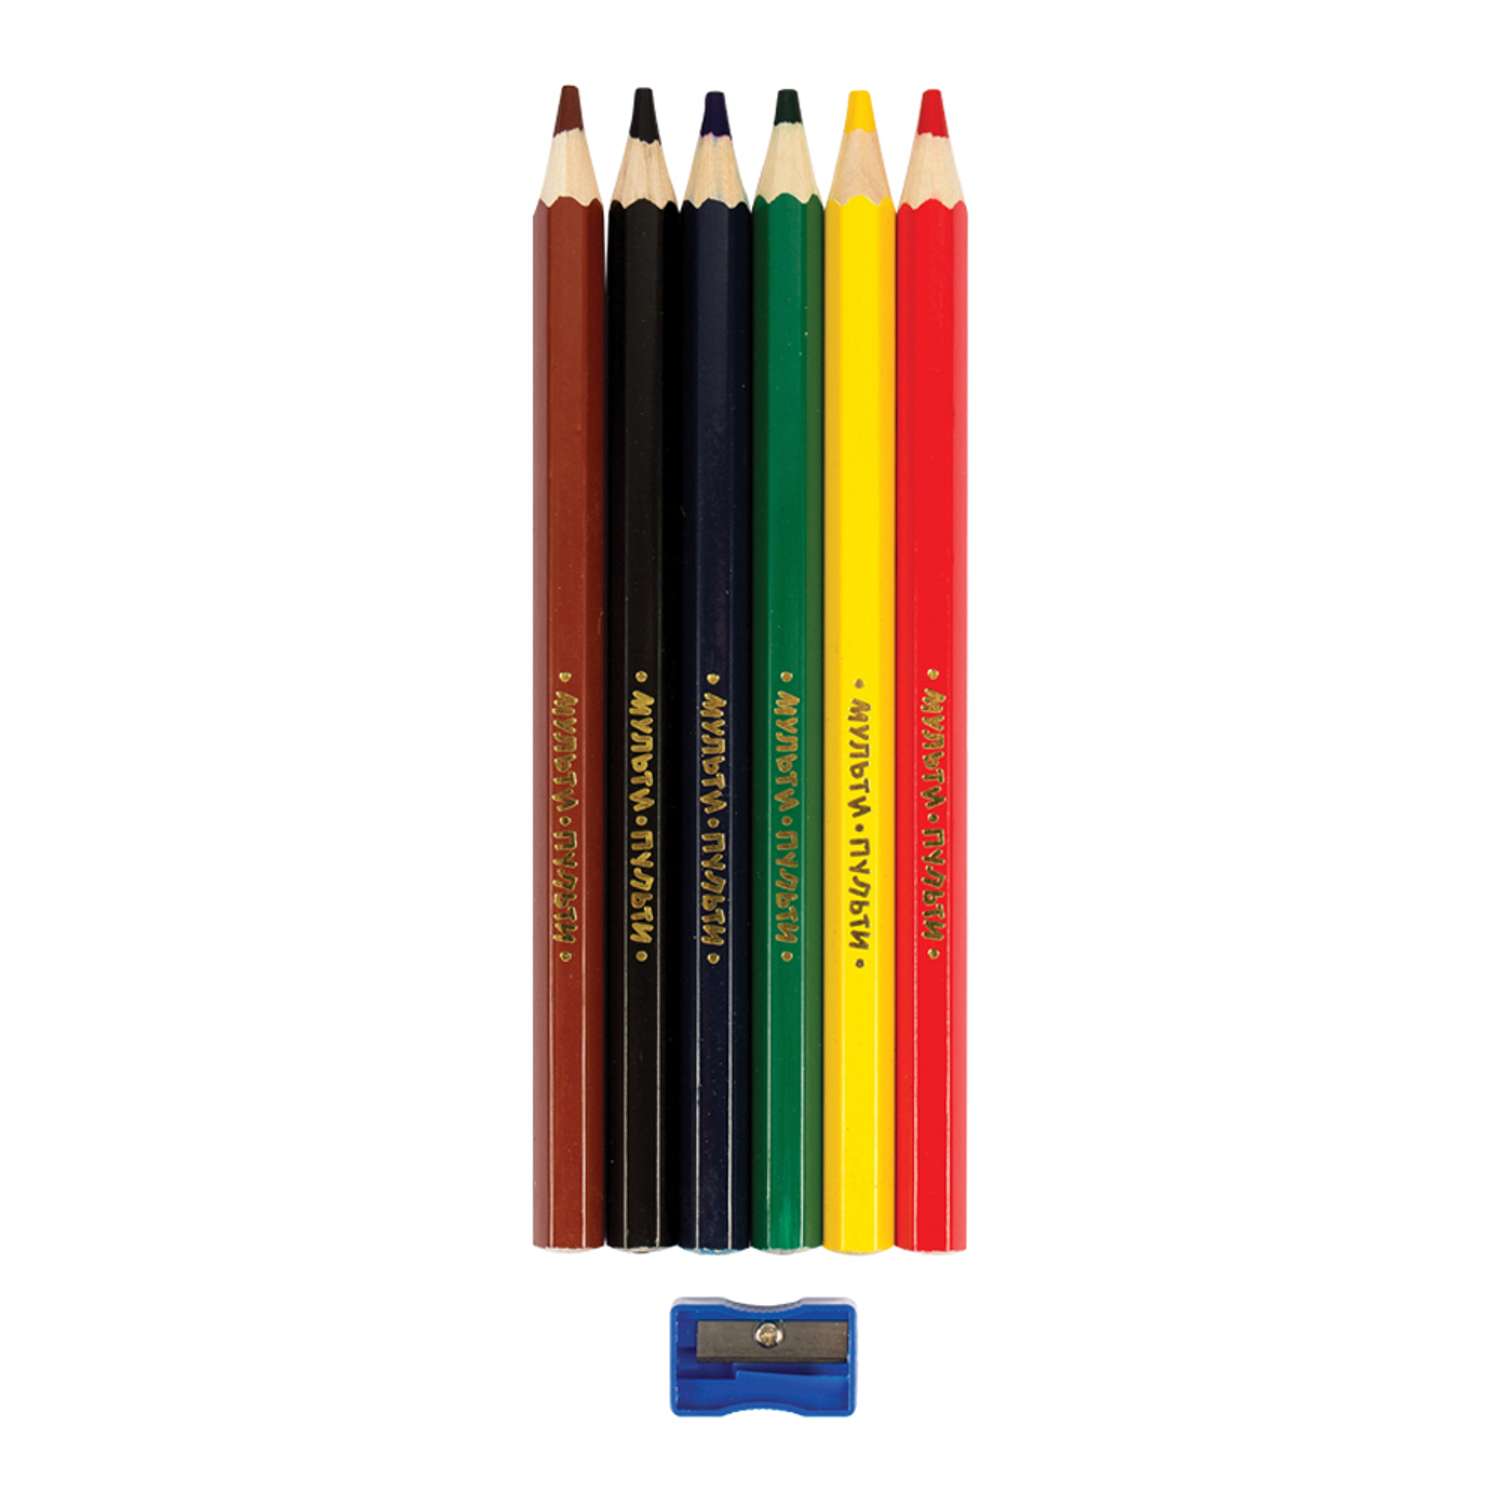 Мульти карандаш. Набор карандашей Мульти Пульти. Карандаши 6 цветов. Карандаши упаковка 6 цветов.